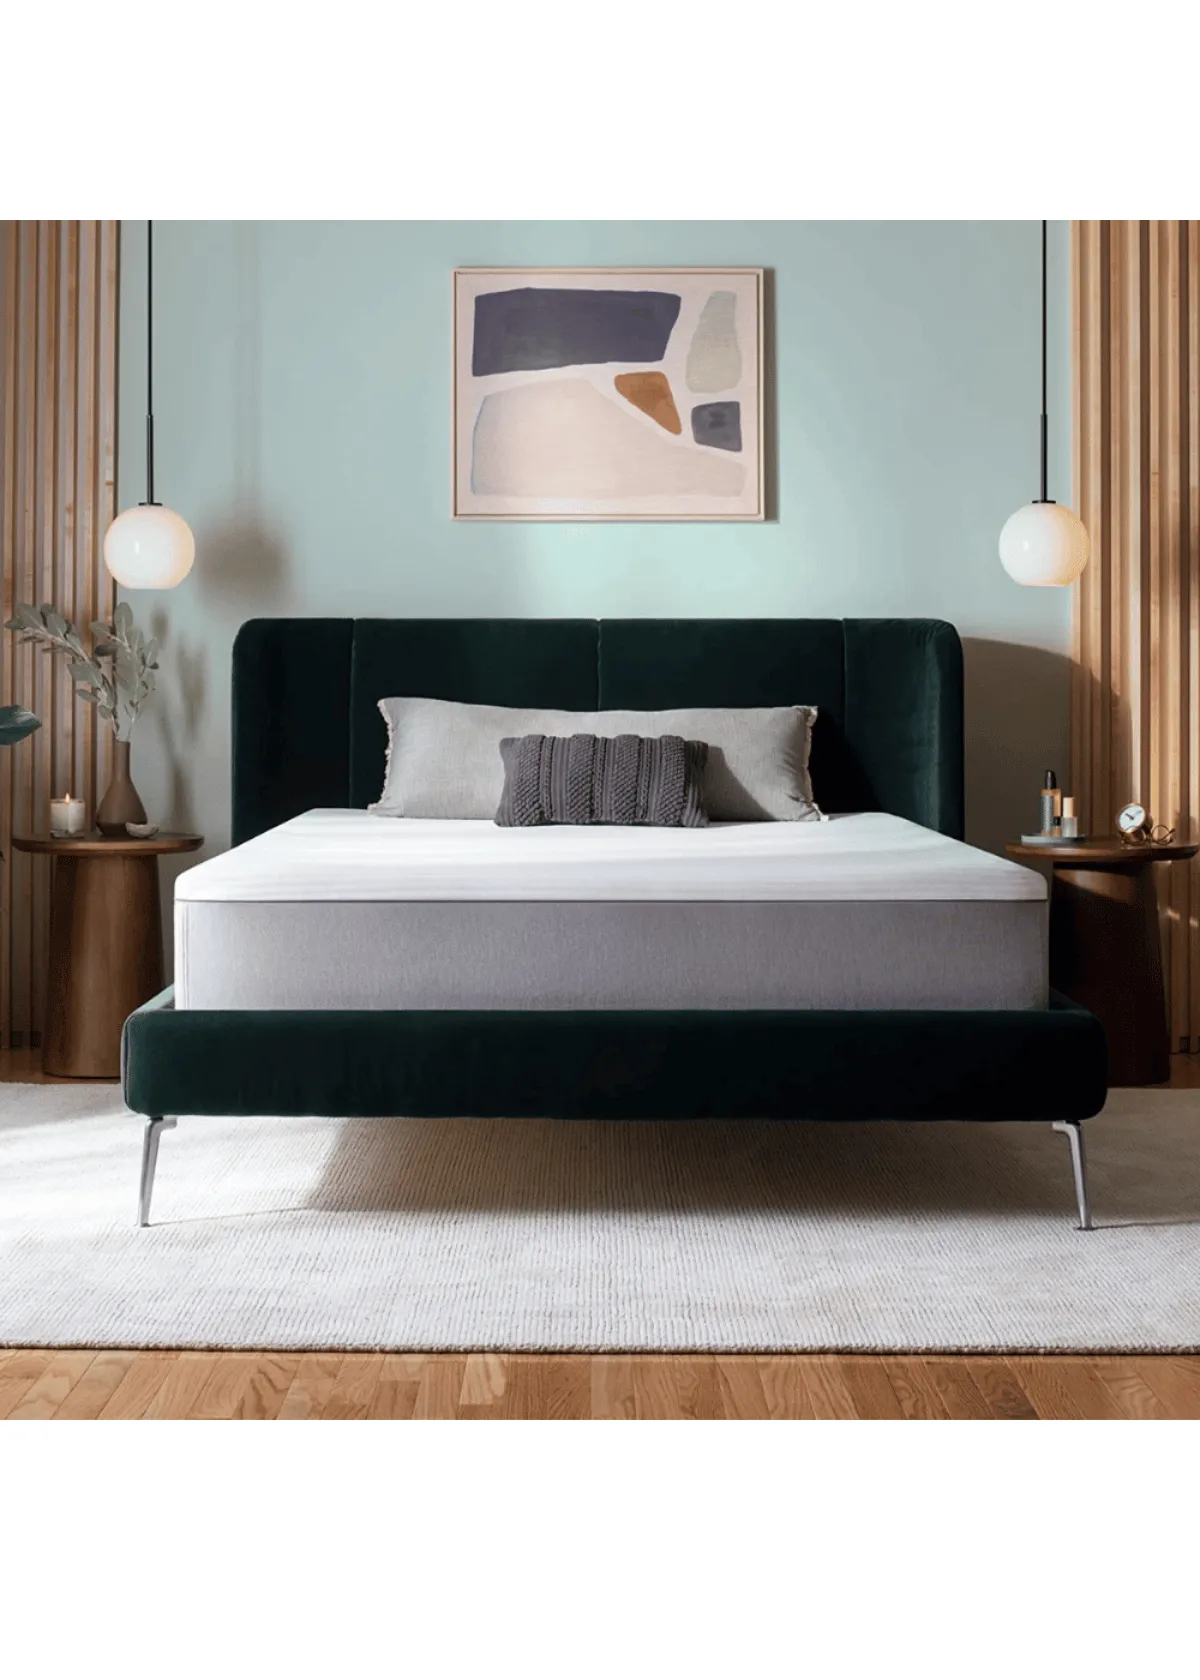 "Purple Twin Mattress | Best Bed Reviews of a Top Sleep Brand"